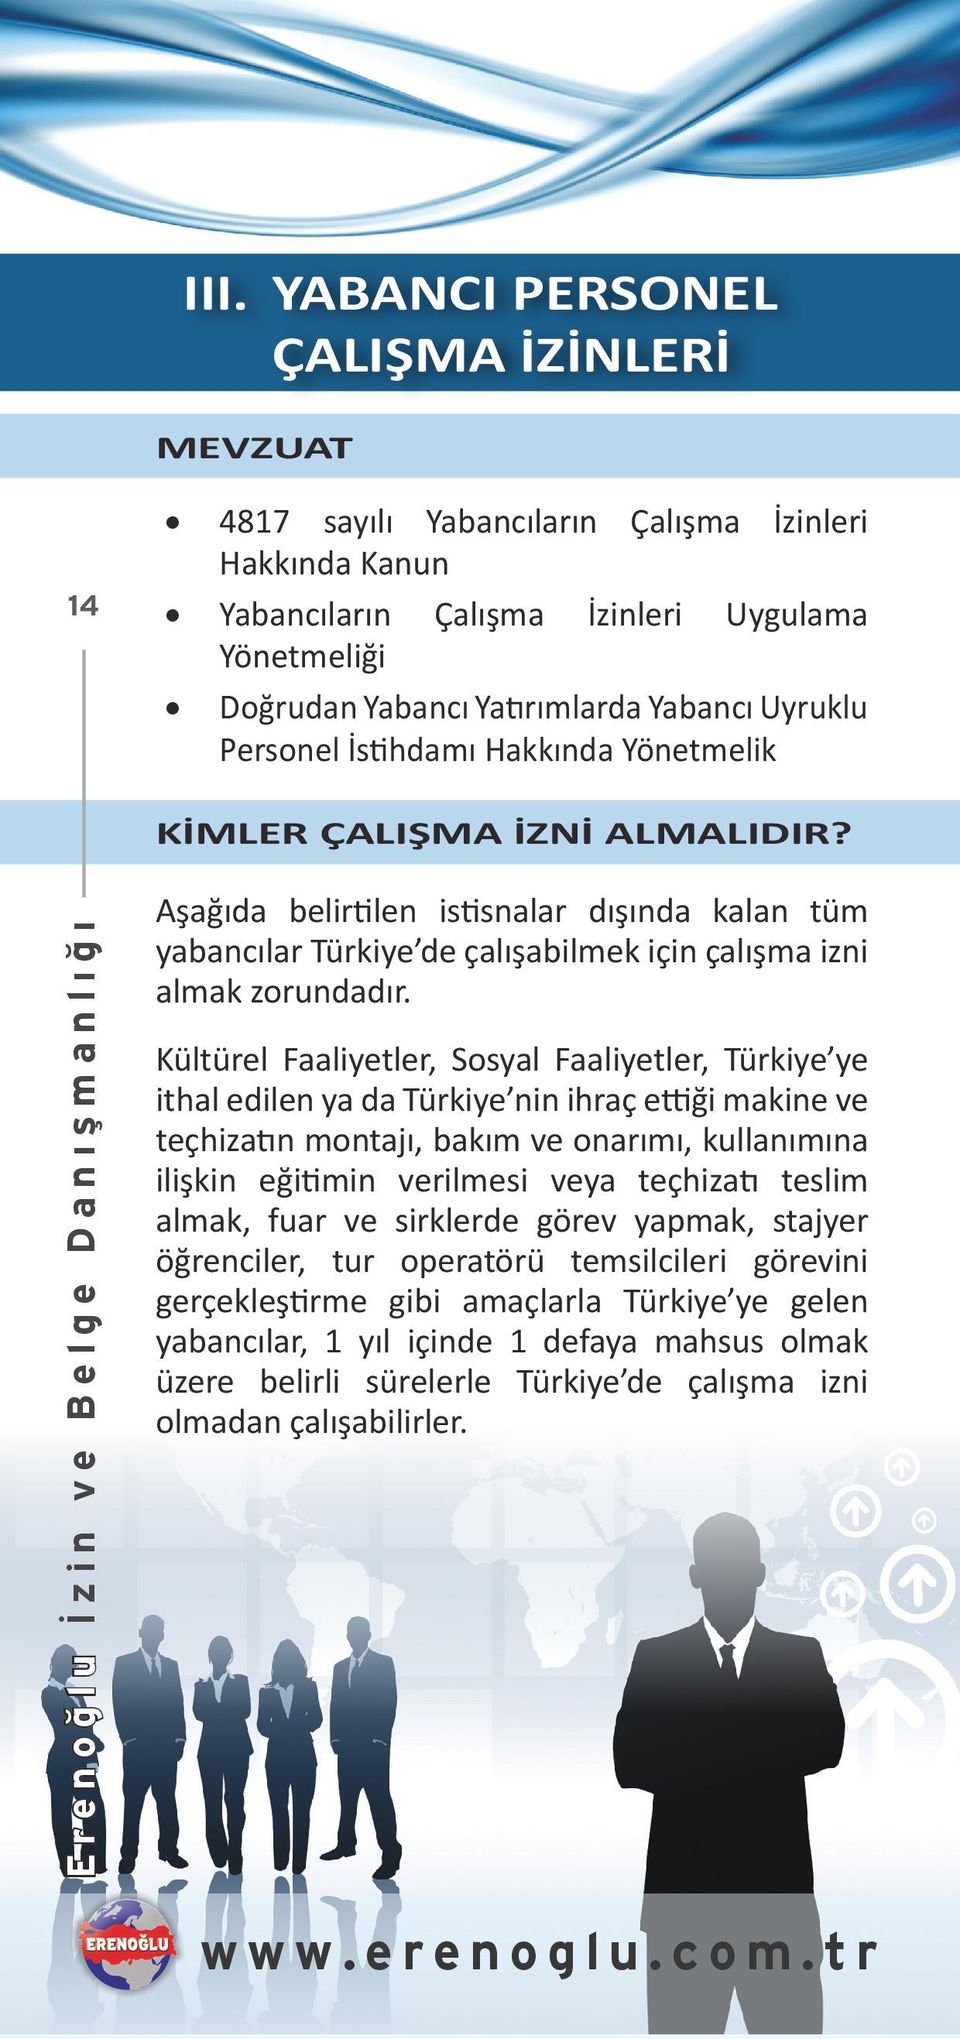 Erenoğlu İzin ve Belge Danışmanlığı Aşağıda belirtilen istisnalar dışında kalan tüm yabancılar Türkiye de çalışabilmek için çalışma izni almak zorundadır.